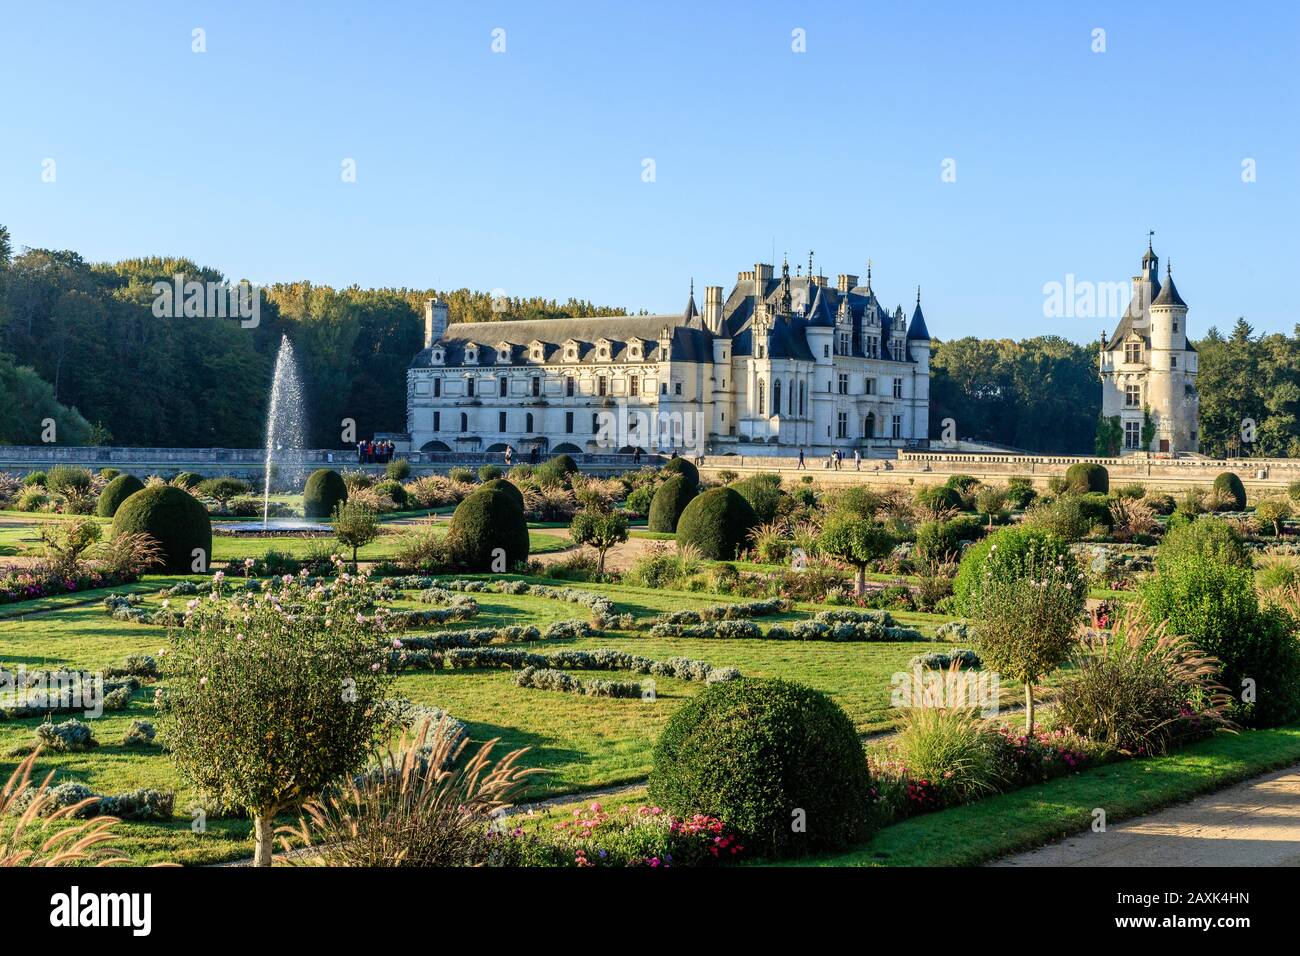 Francia, Indre et Loire, Valle della Loira dichiarata Patrimonio Mondiale dall'UNESCO, Chenonceaux, Chateau de Chenonceau Parco e Giardini, castello e il Jardin de Foto Stock